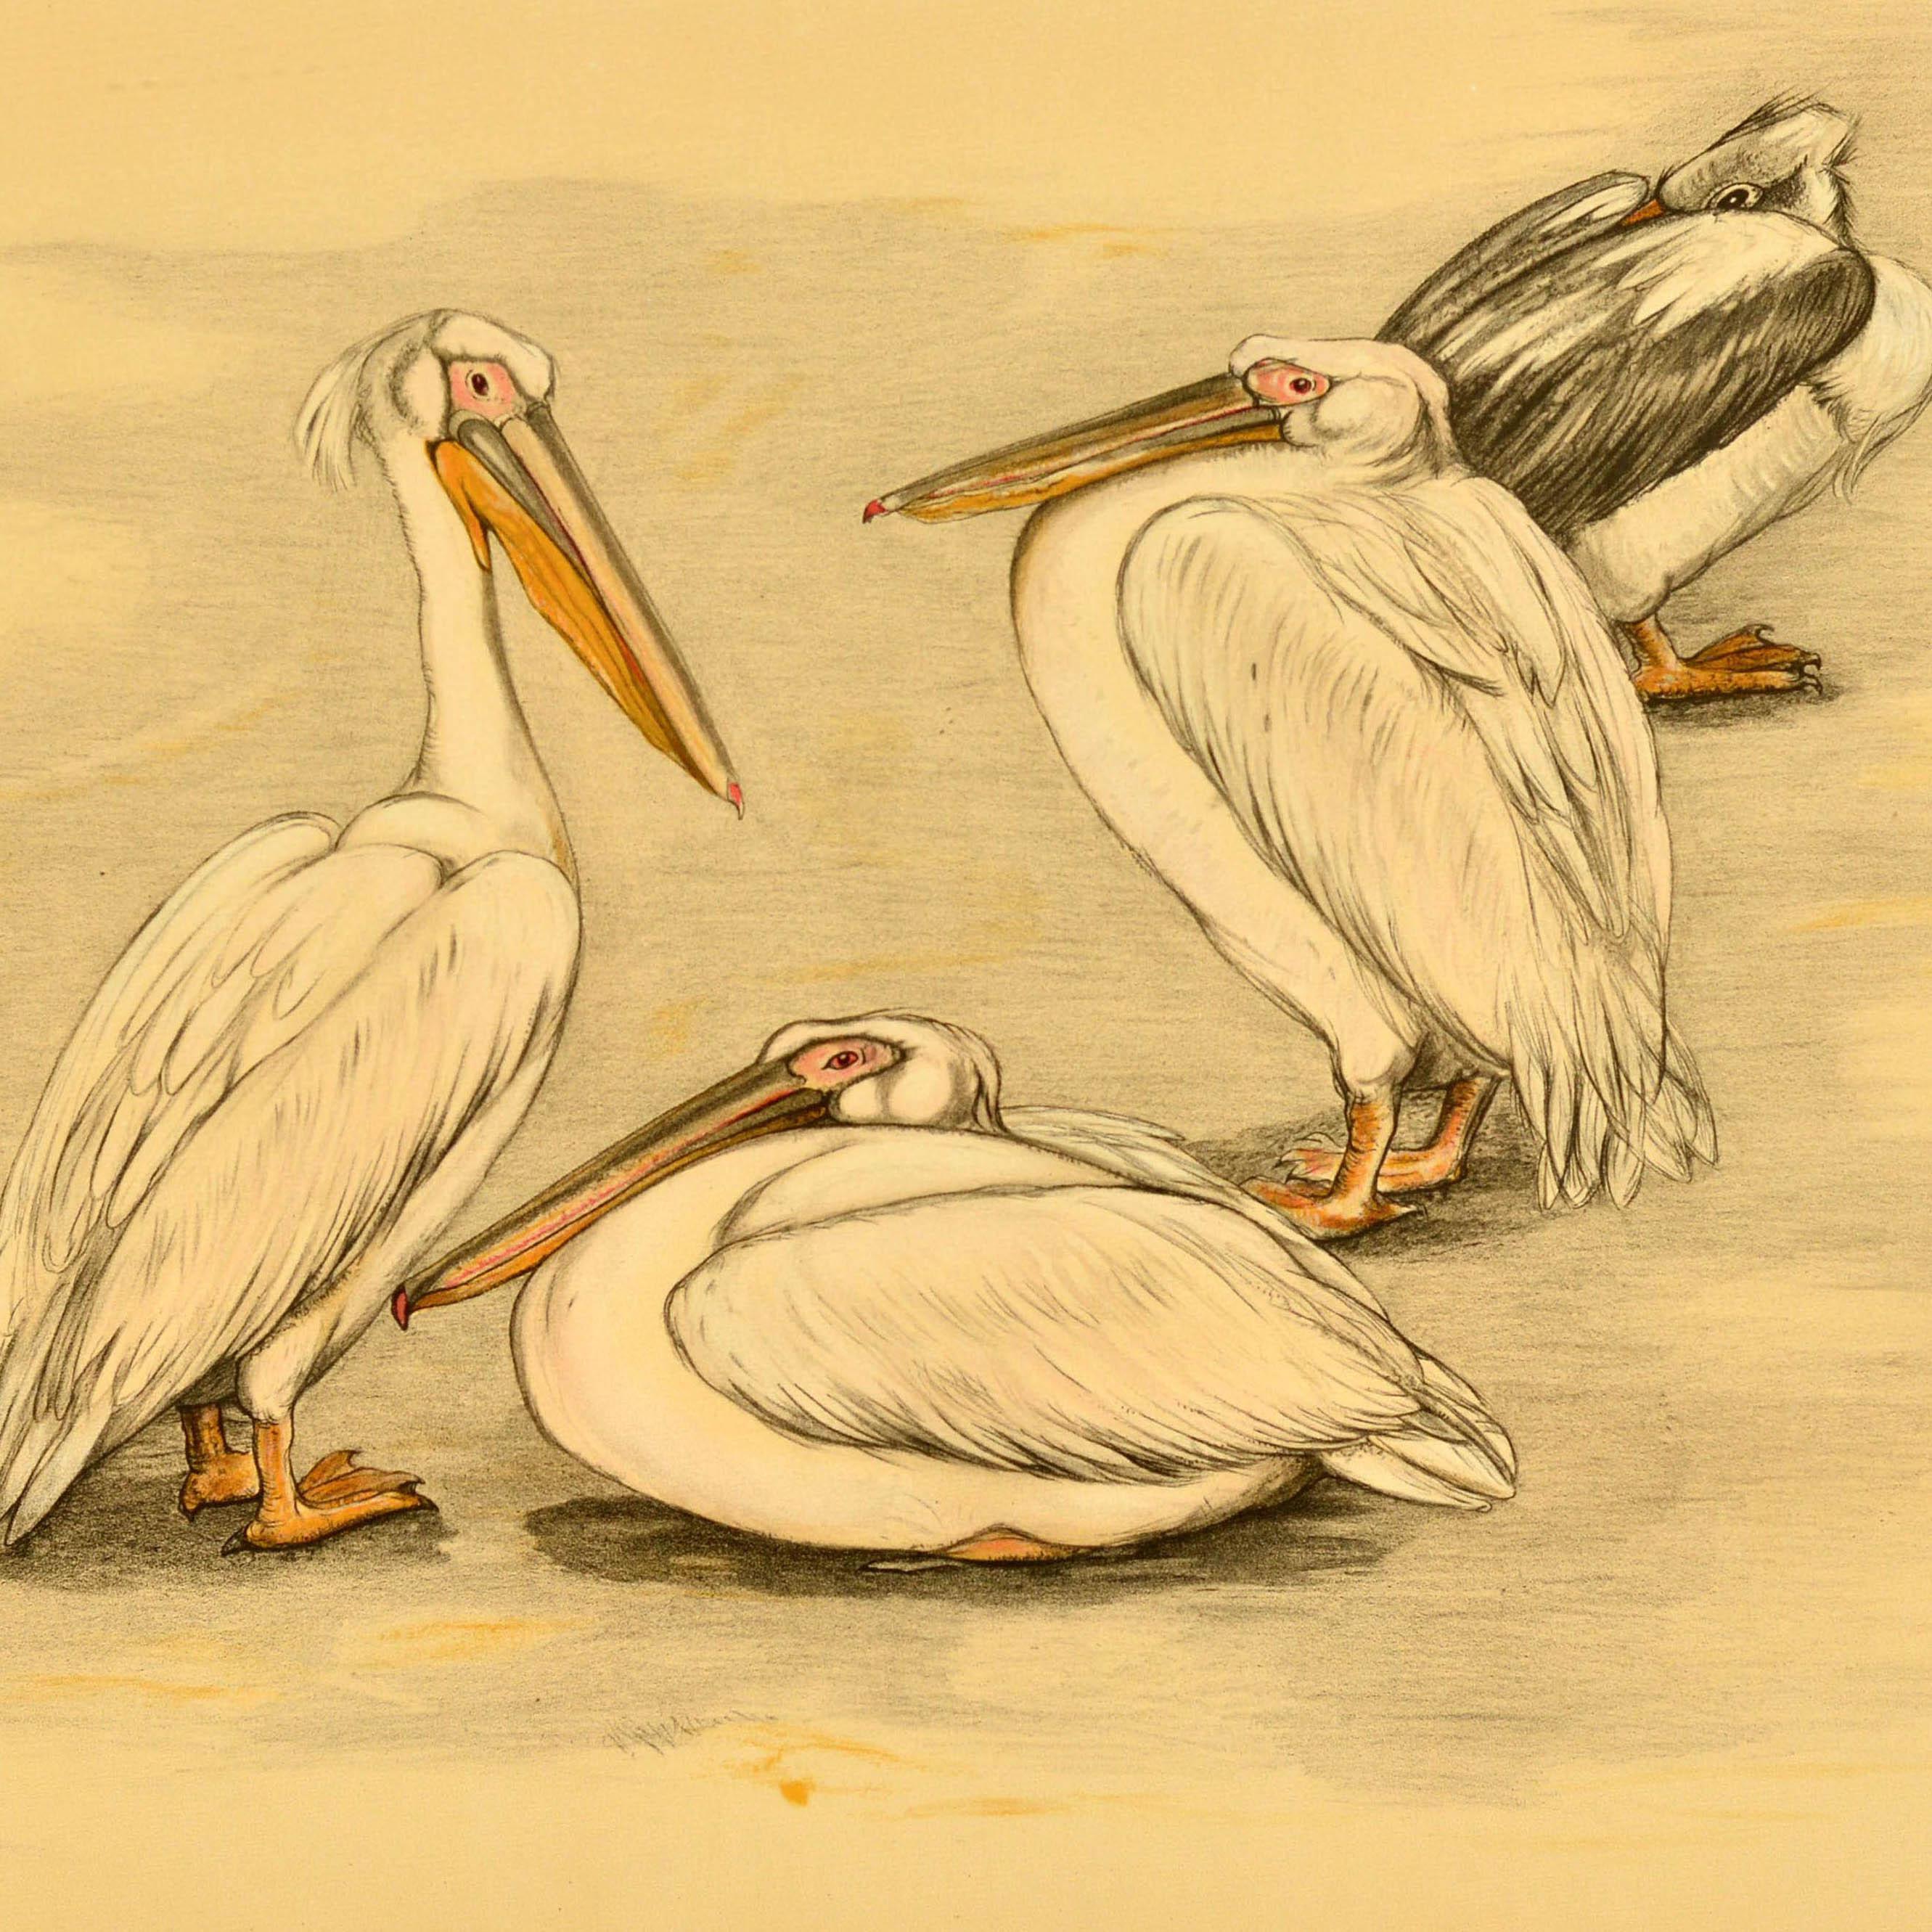 Affiche originale vintage sur les animaux présentant une illustration de quatre pélicans par l'artiste néerlandais et peintre animalier Berend Sluyterman montrant l'un des oiseaux assis et les autres debout dans différentes poses. Horizontal. Bon